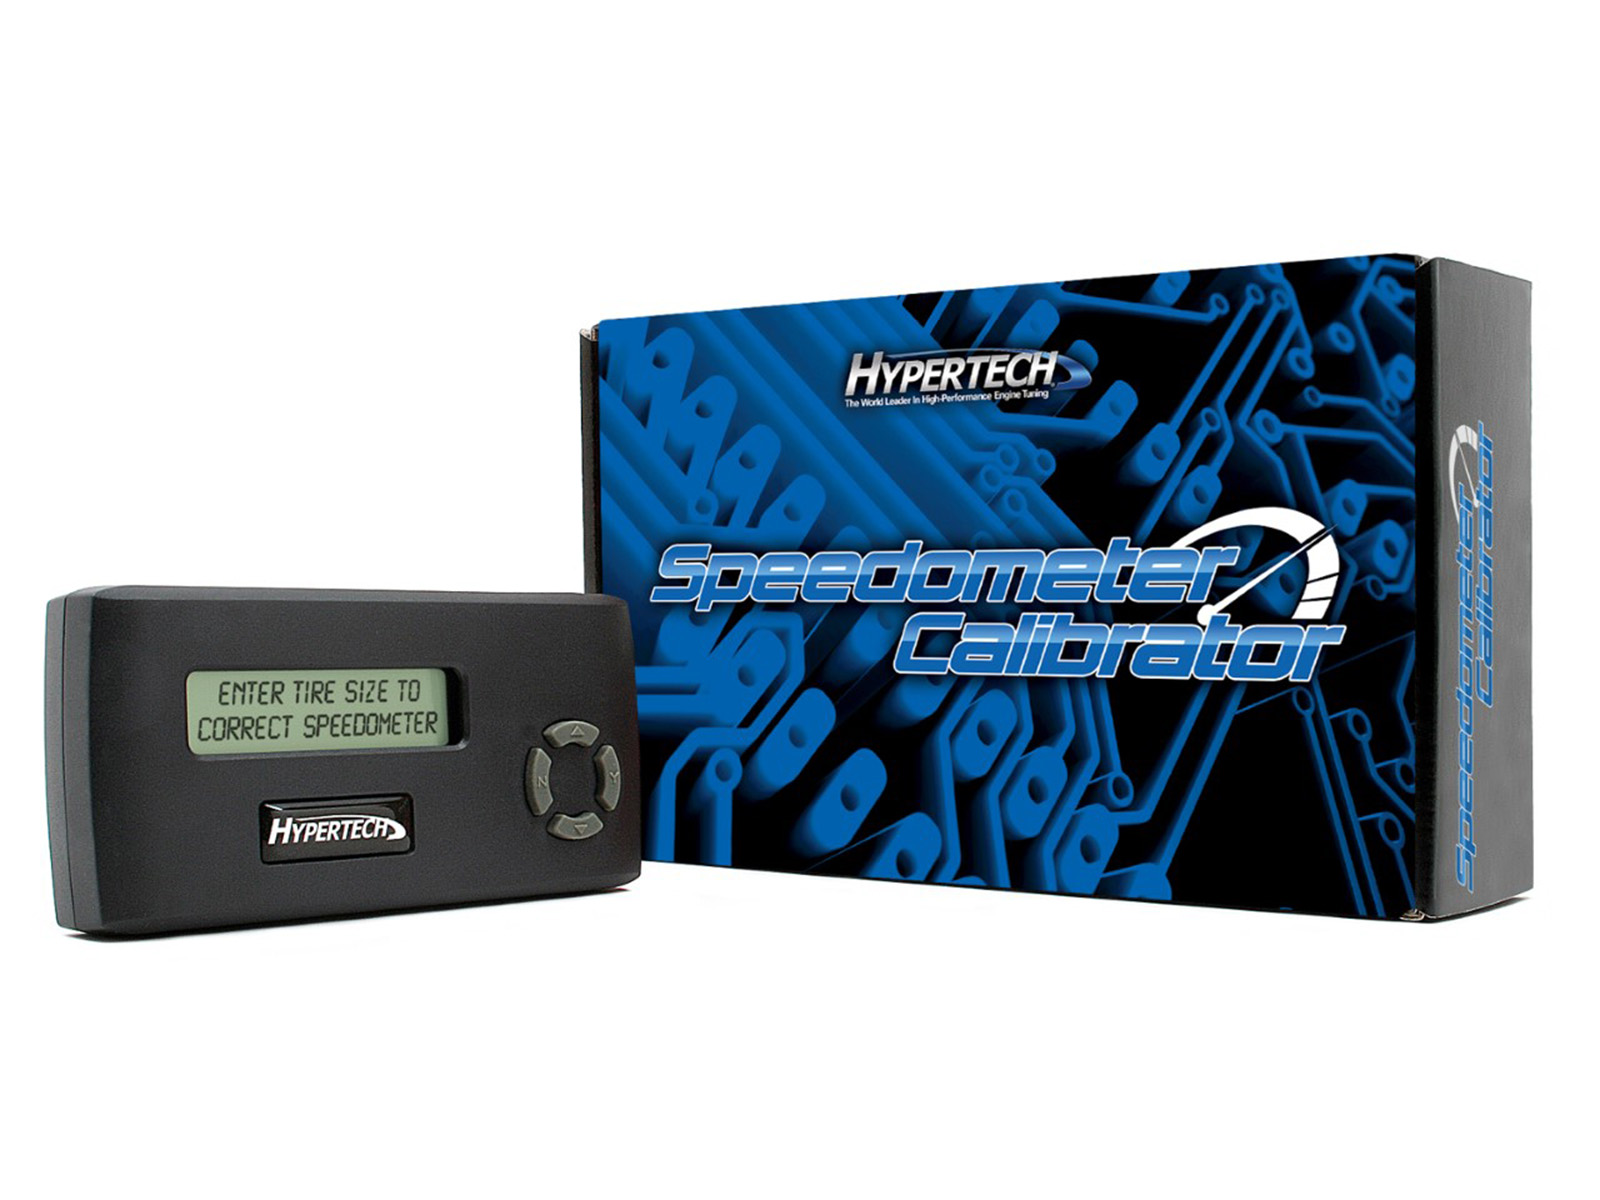 Hypertech Speedometer & Odometer Calibrator | RealTruck